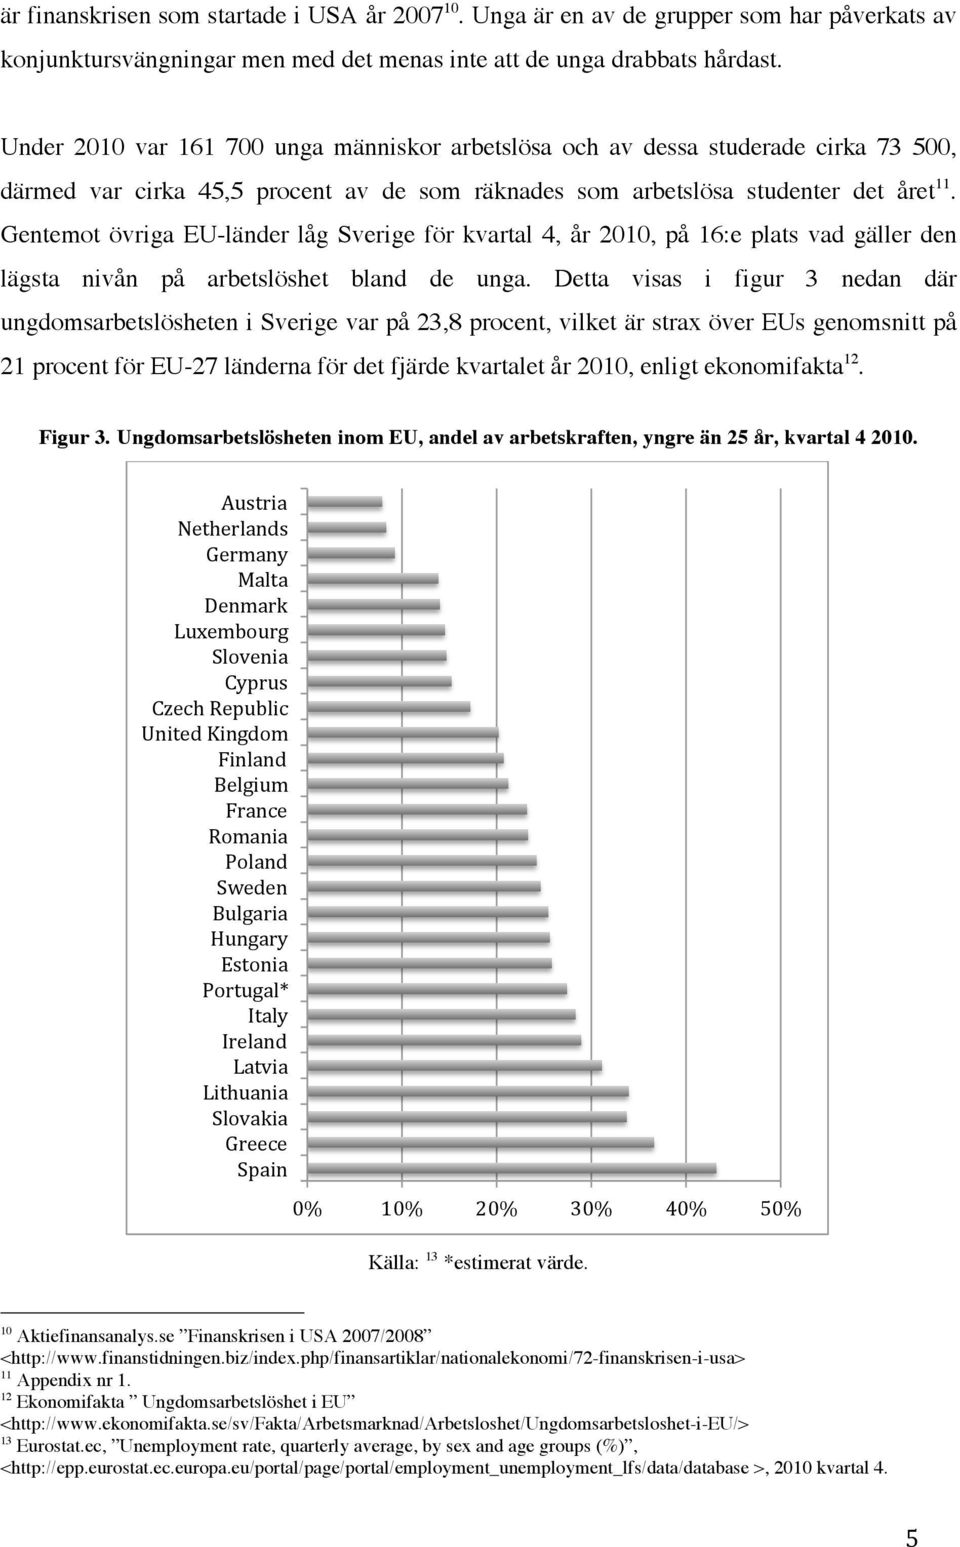 Gentemot övriga EU-länder låg Sverige för kvartal 4, år 2010, på 16:e plats vad gäller den lägsta nivån på arbetslöshet bland de unga.